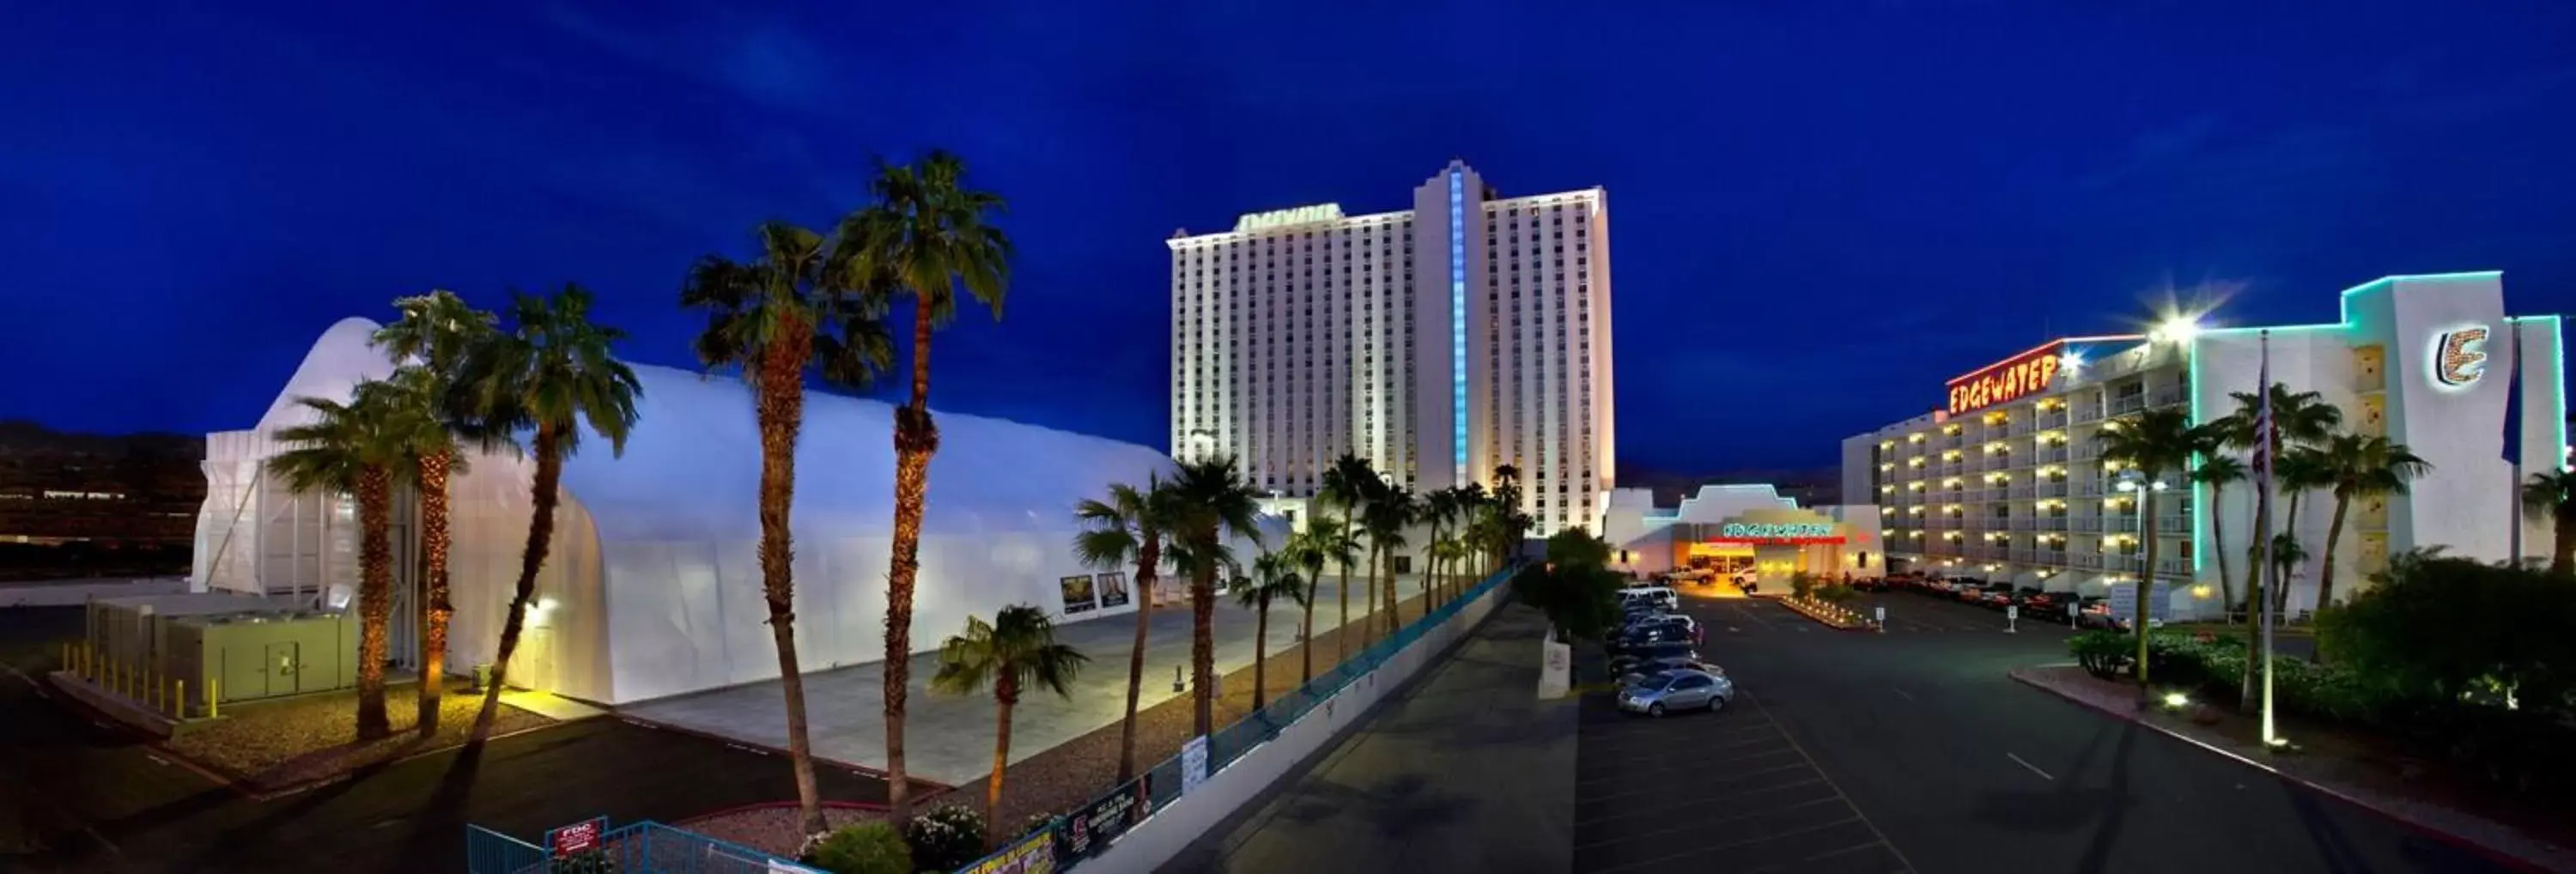 The Edgewater Hotel and Casino